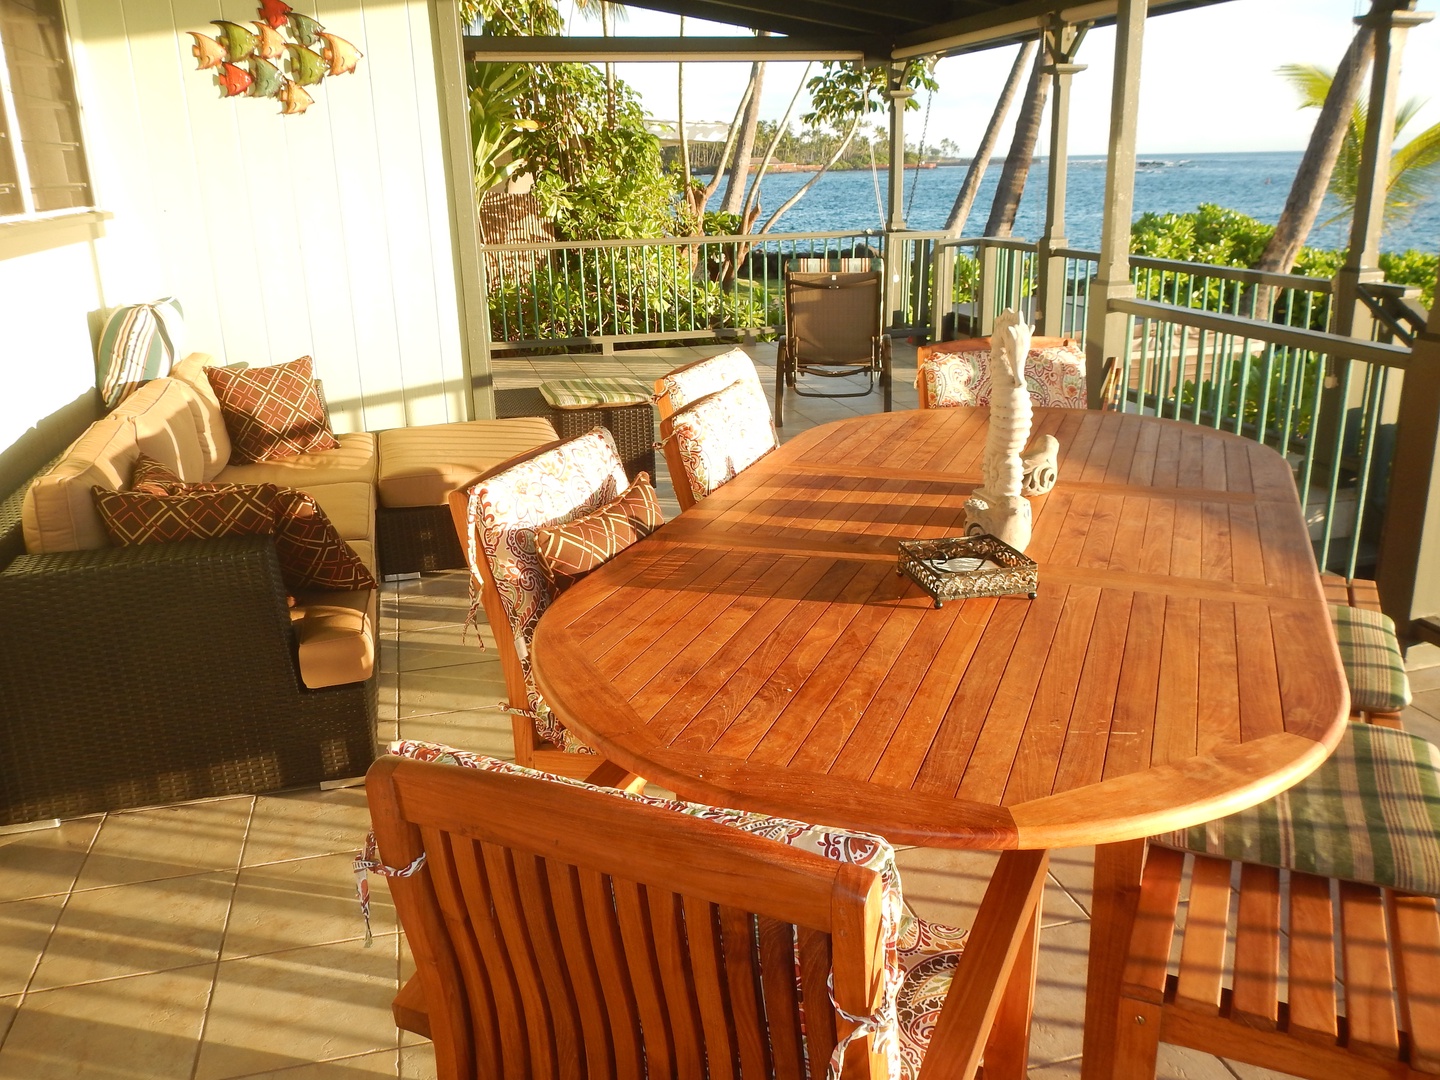 Kailua Kona Vacation Rentals, Hoku'Ea Hale - Large outdoor dining with views of Kahalu'u Bay!